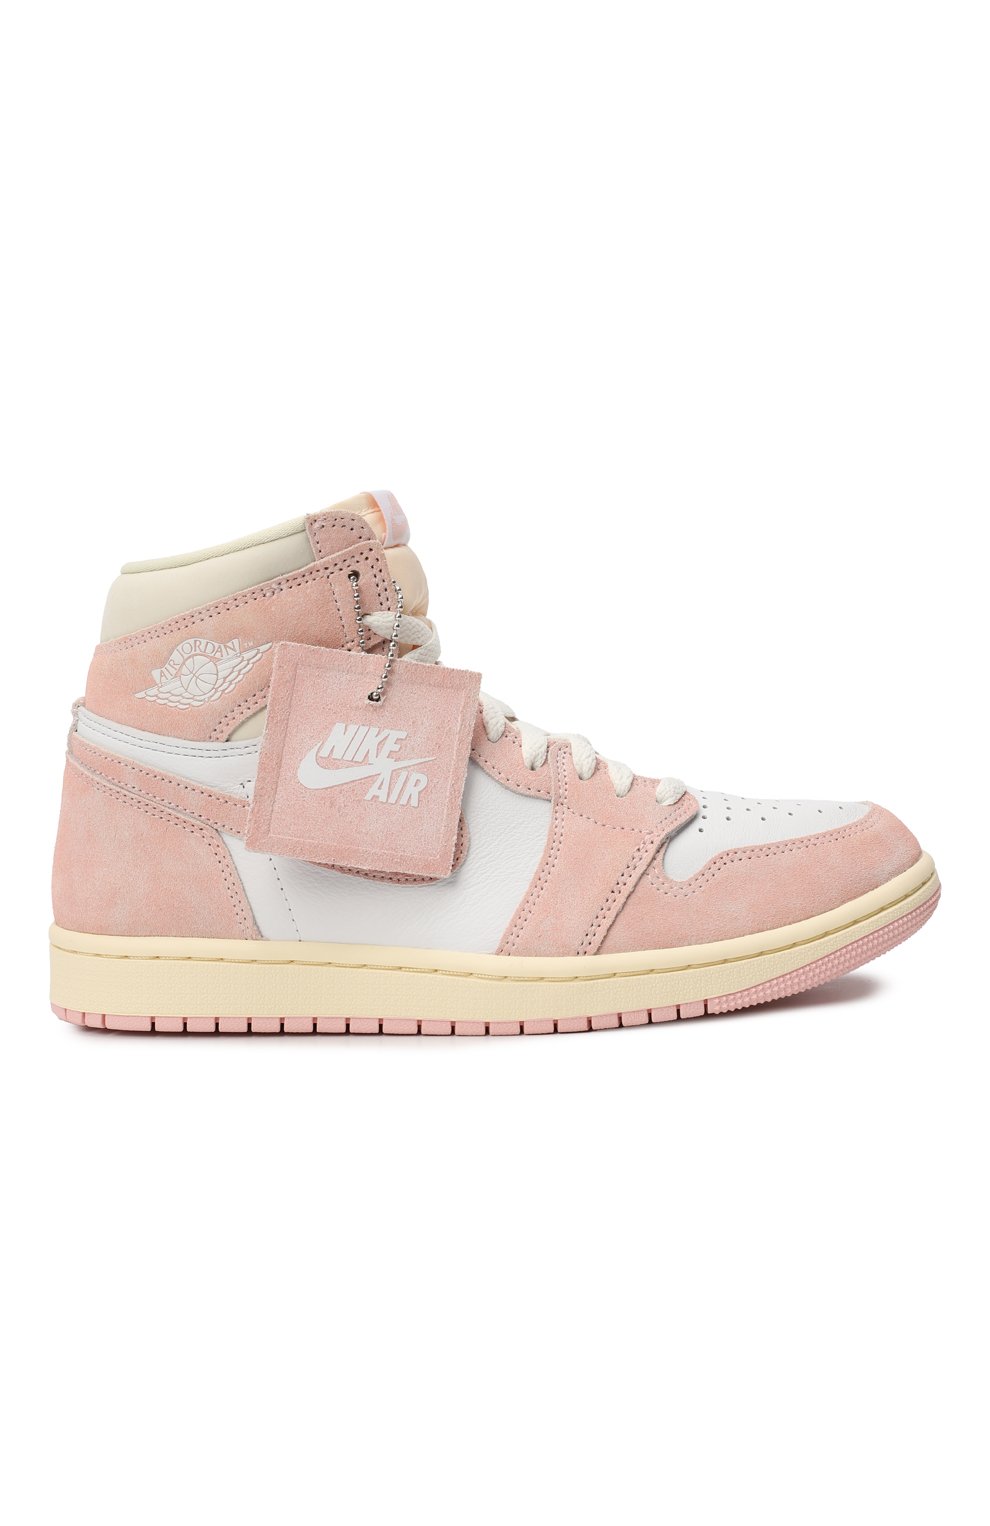 Кеды Air Jordan 1 Retro High OG Washed Pink | Nike | Розовый - 5